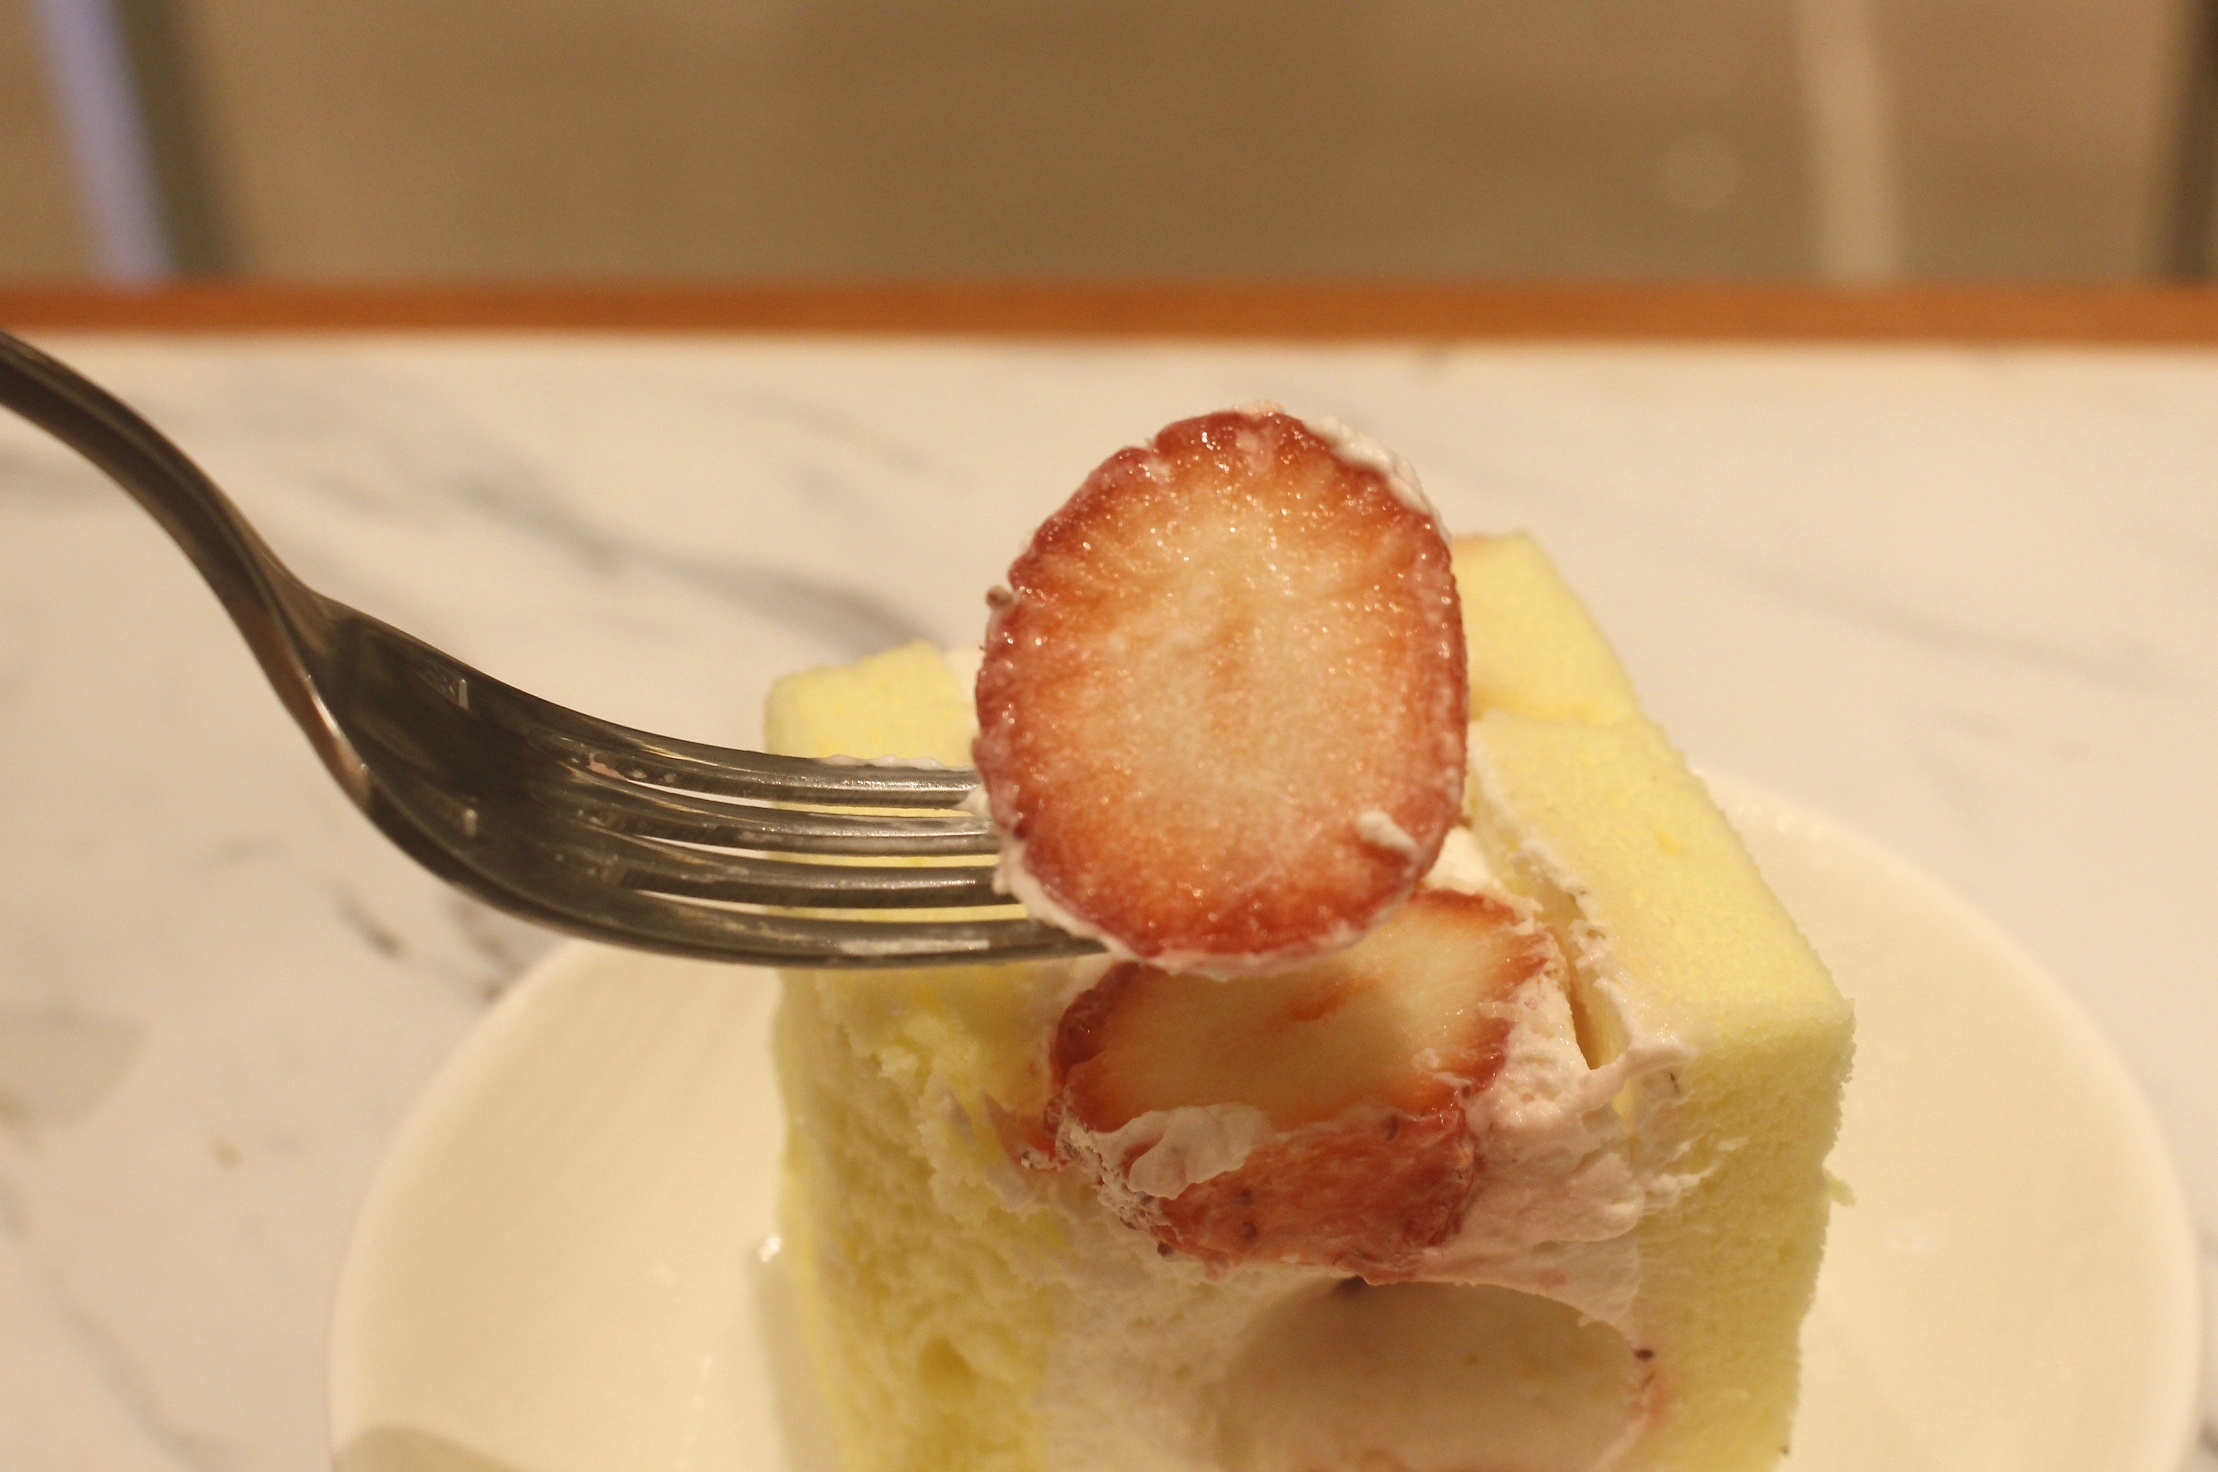 【台北 la vie bonbon】微風南山2樓日本夢幻甜點。讓人幸福的「英式查佛蛋糕」